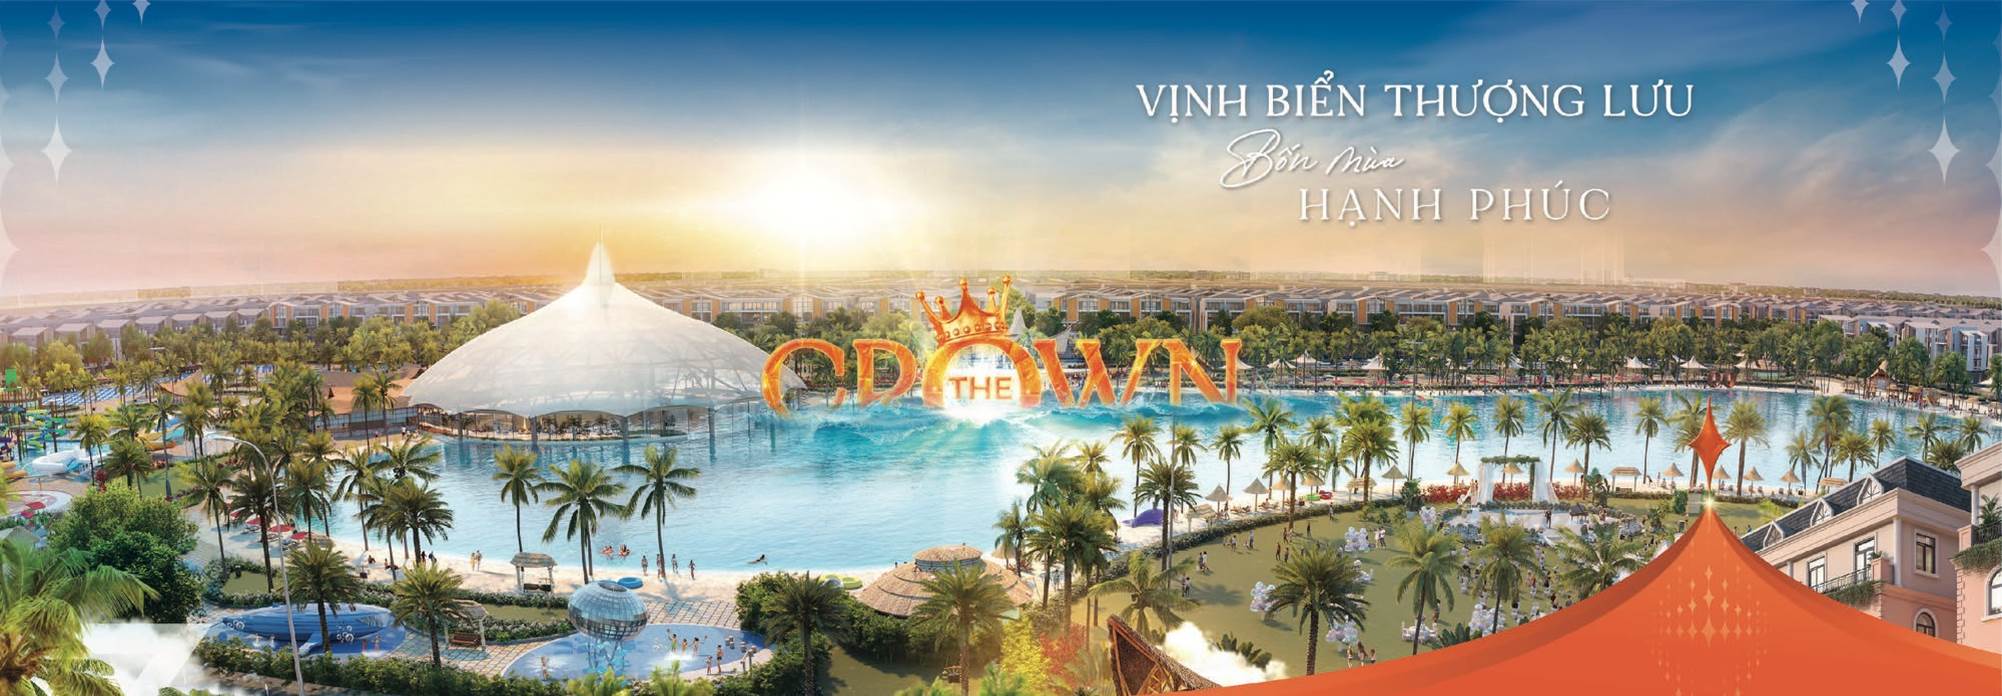 AB Land phân phối chính thức dự án Vinhomes Ocean Park 3 - The Crown